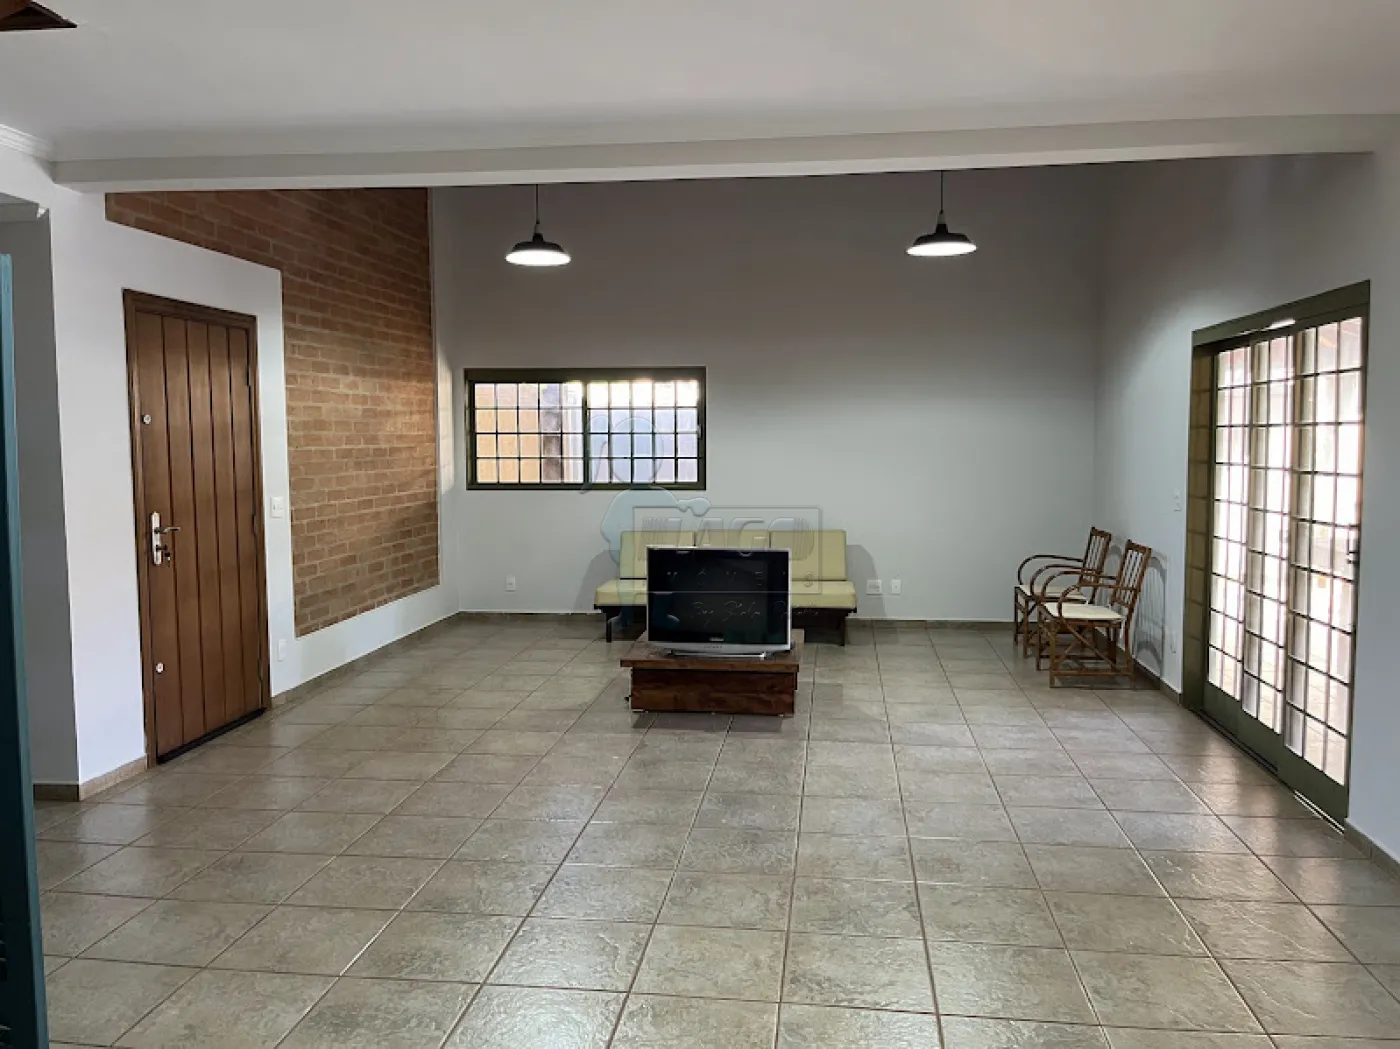 Comprar Casa condomínio / Padrão em Cravinhos R$ 1.130.000,00 - Foto 7